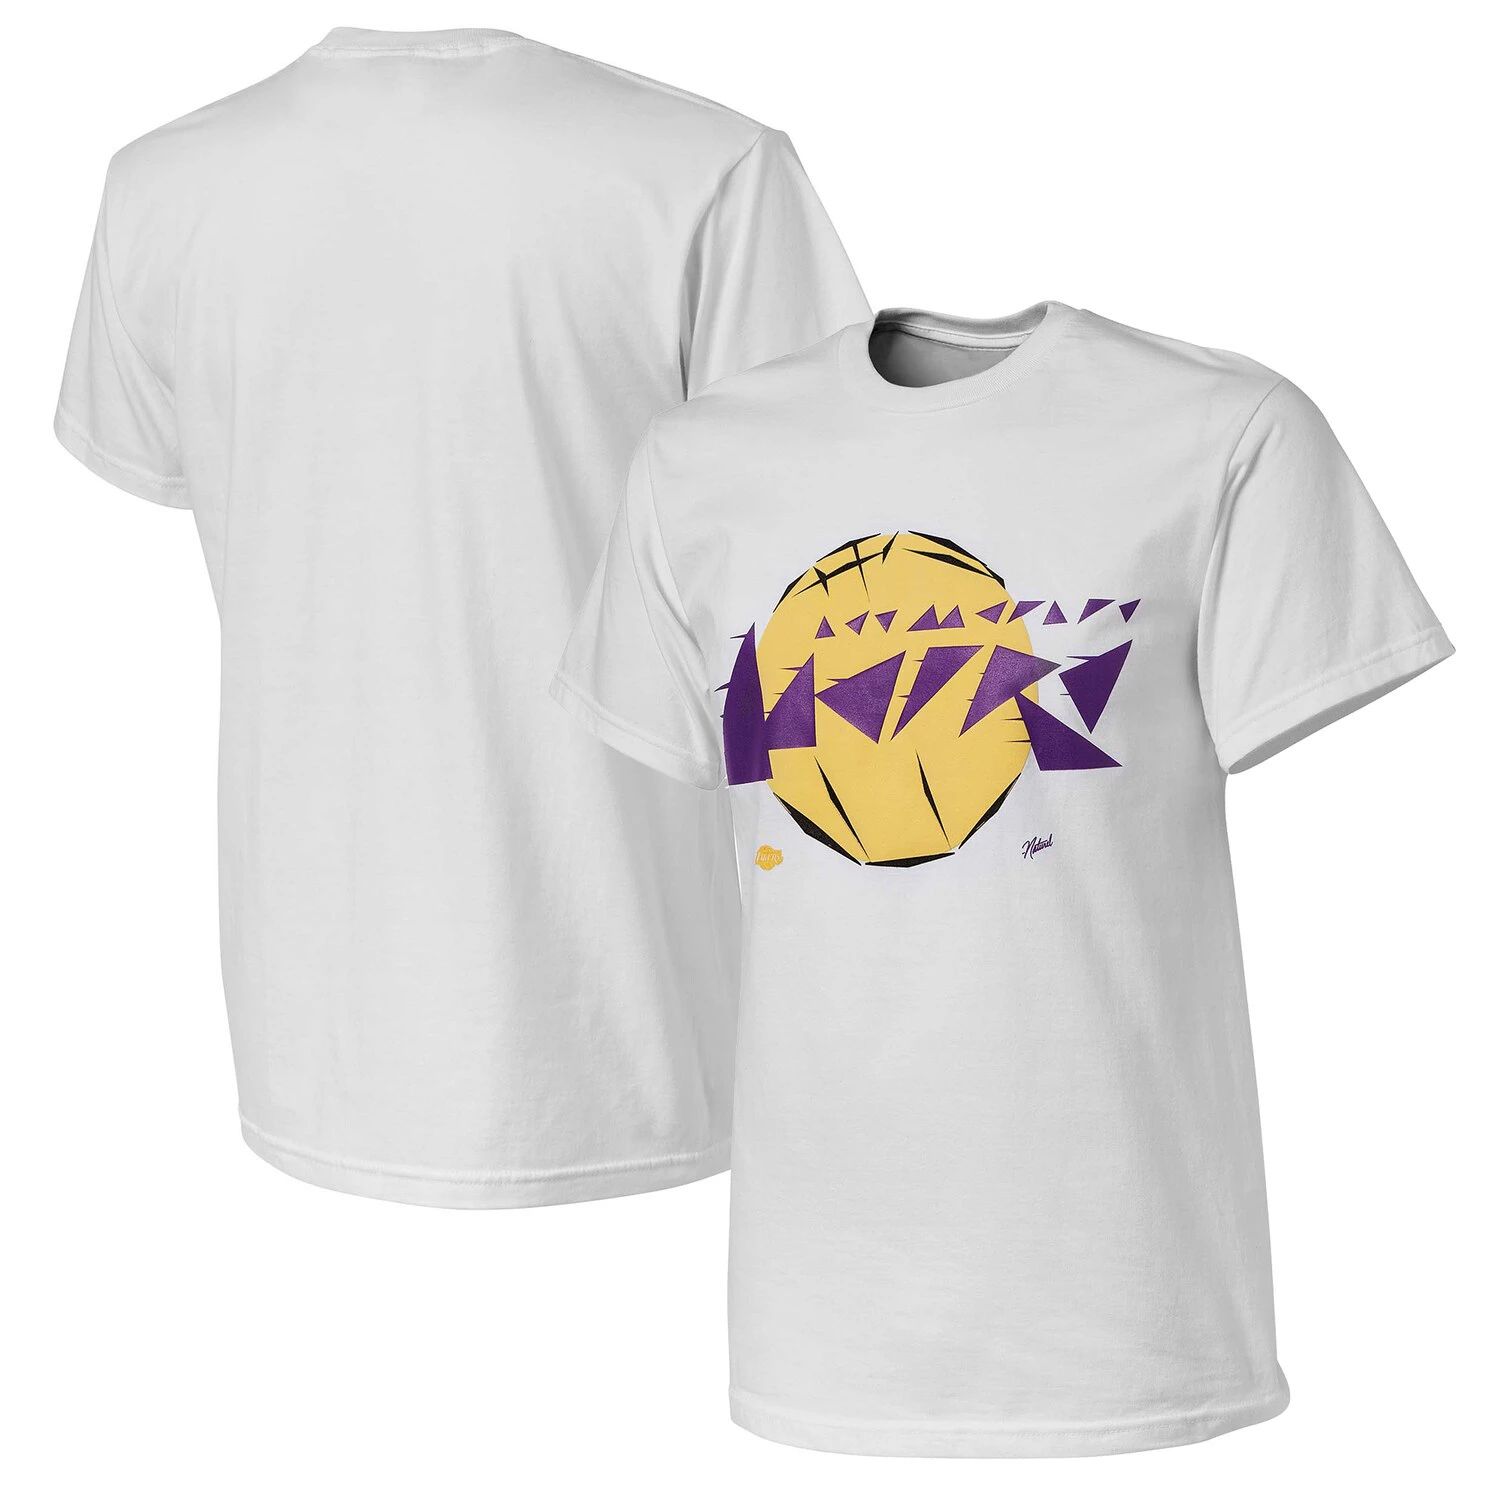 Мужская белая футболка NBA x Naturel Los Angeles Lakers без идентификатора вызывающего абонента